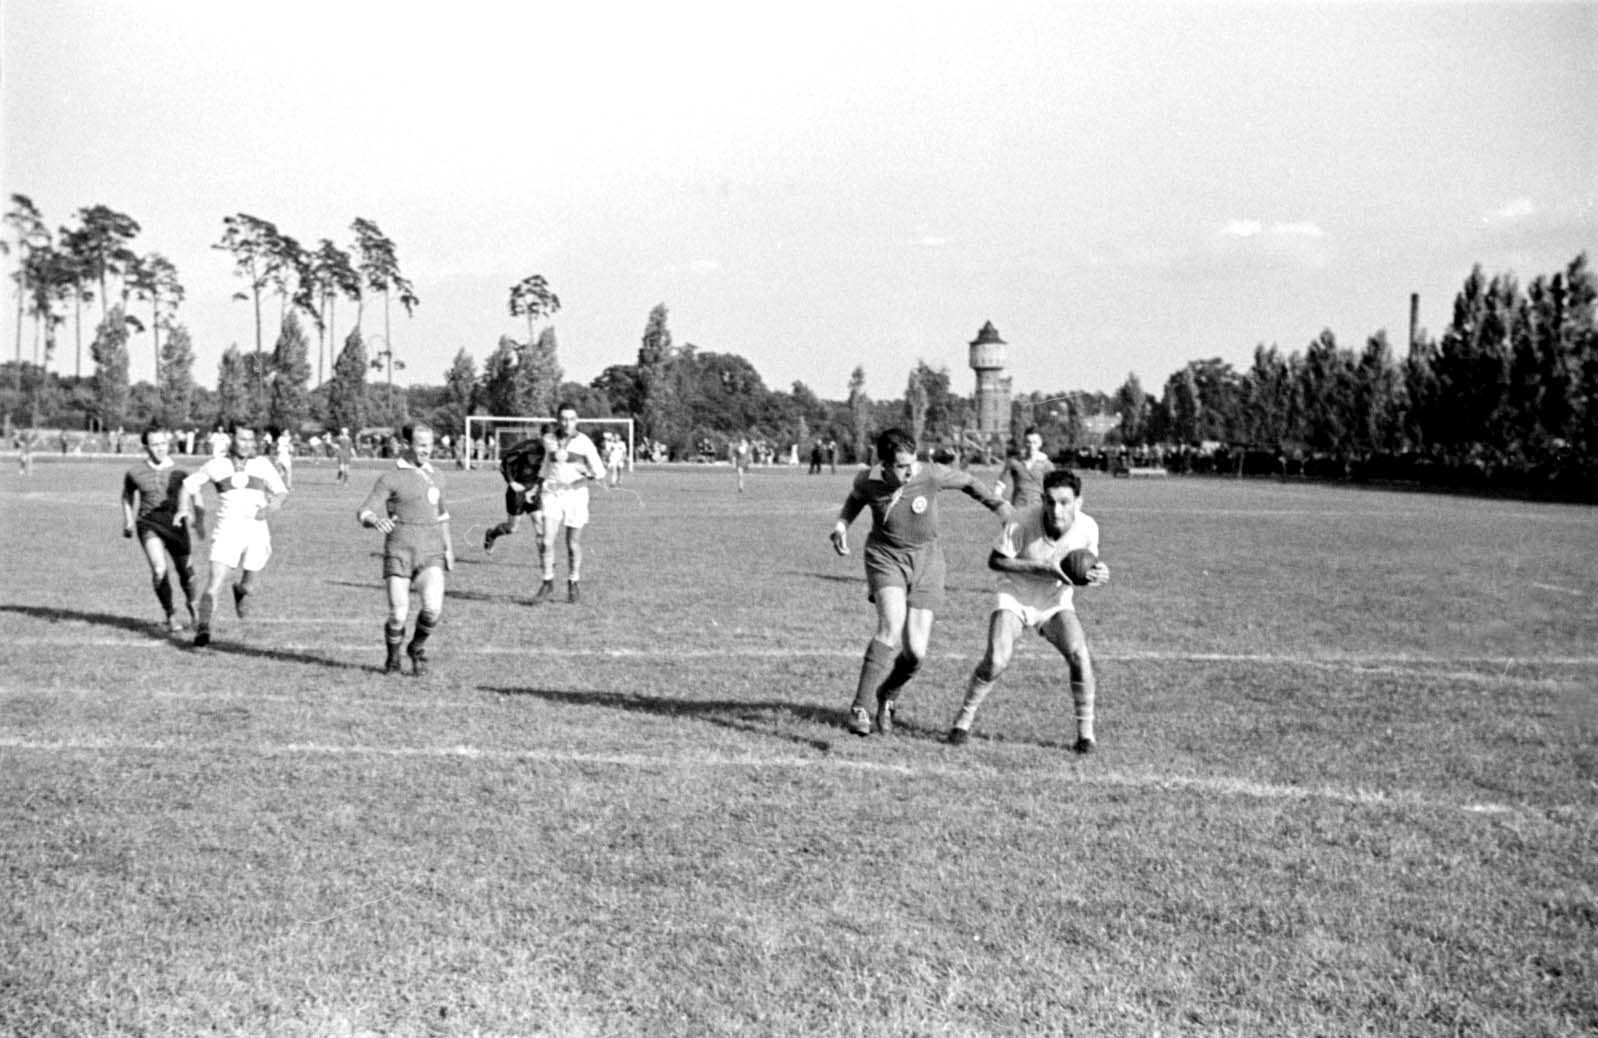 Berlín, Alemania, 1937, partido de balonmano en los juegos deportivos internacionales "Bar Kojba" con la participación de "Hakoaj Viena". Los juegos tuvieron lugar en el campo Grunewald e incluían fútbol, balonmano y hockey.